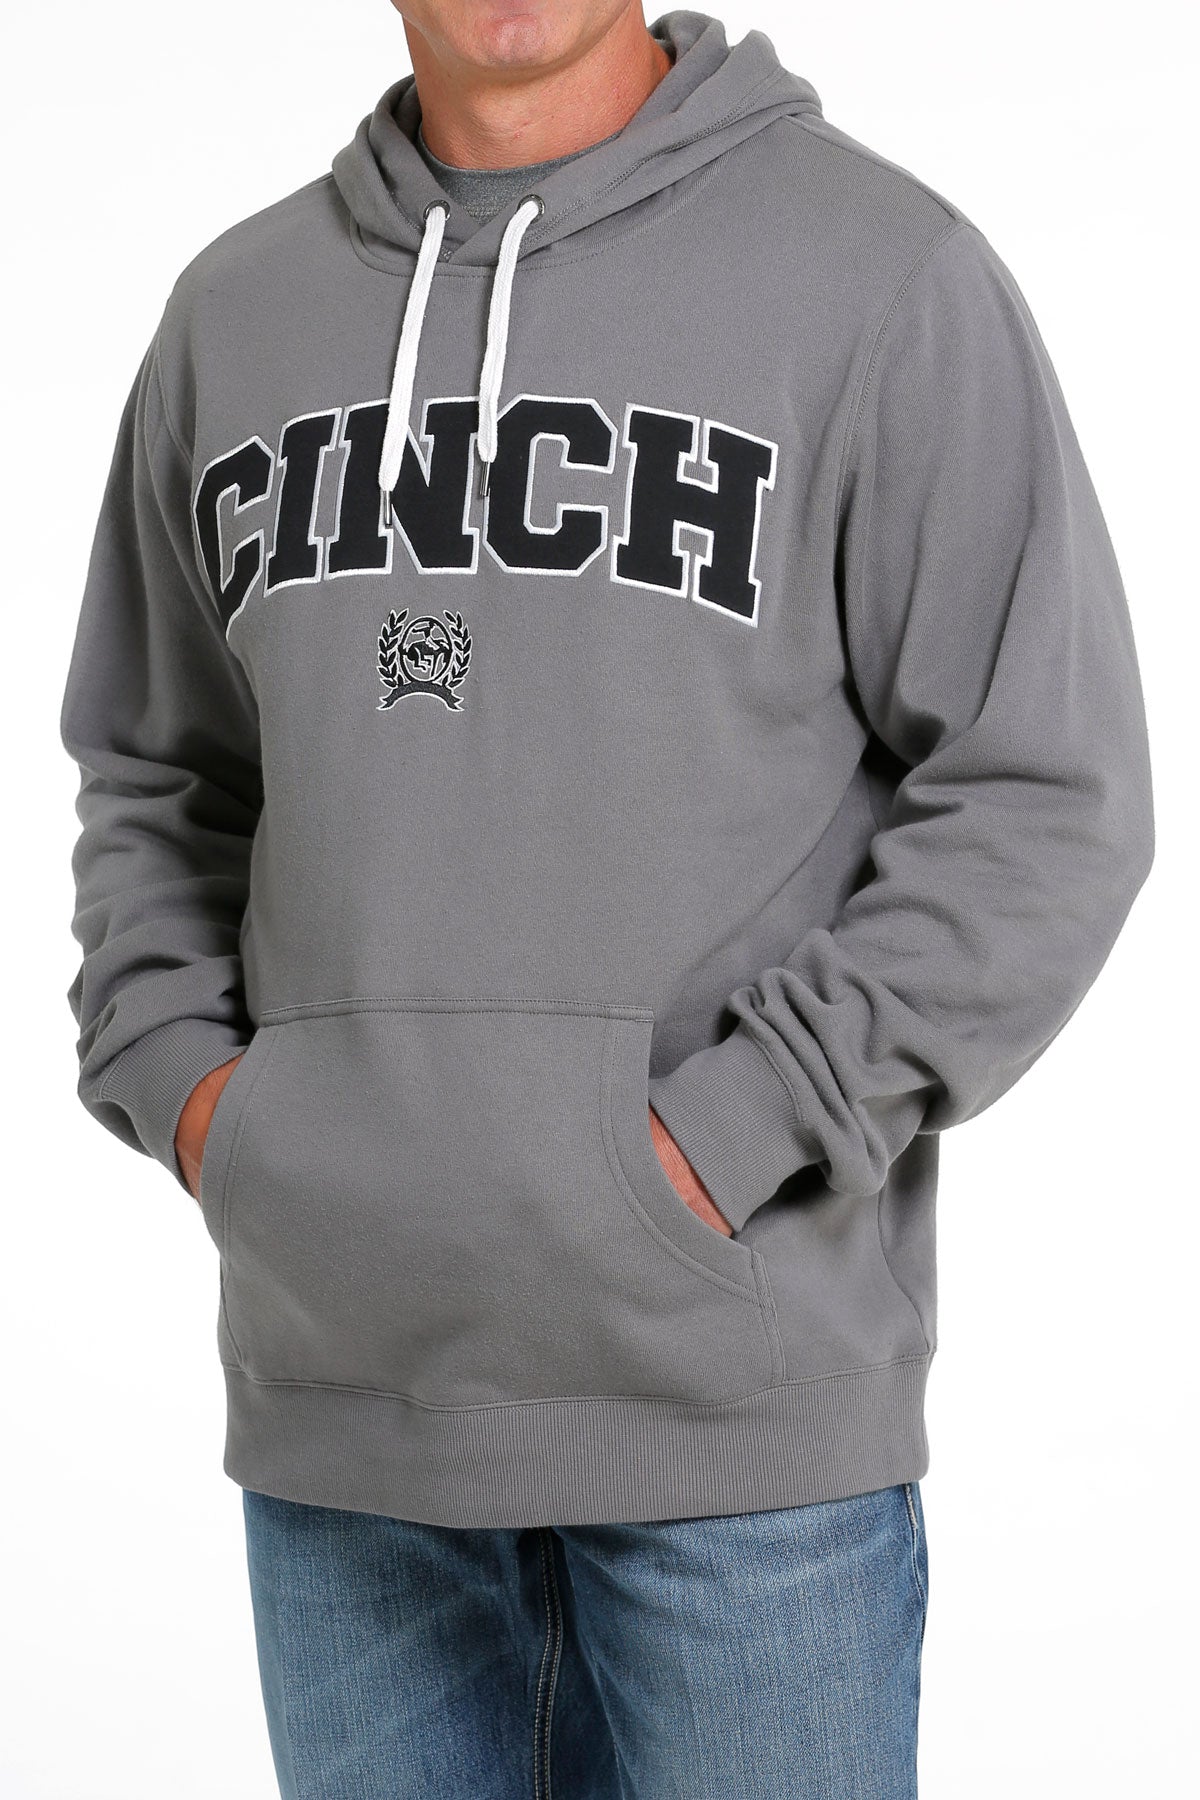 CINCH Men's Grey Pullover Hoodie